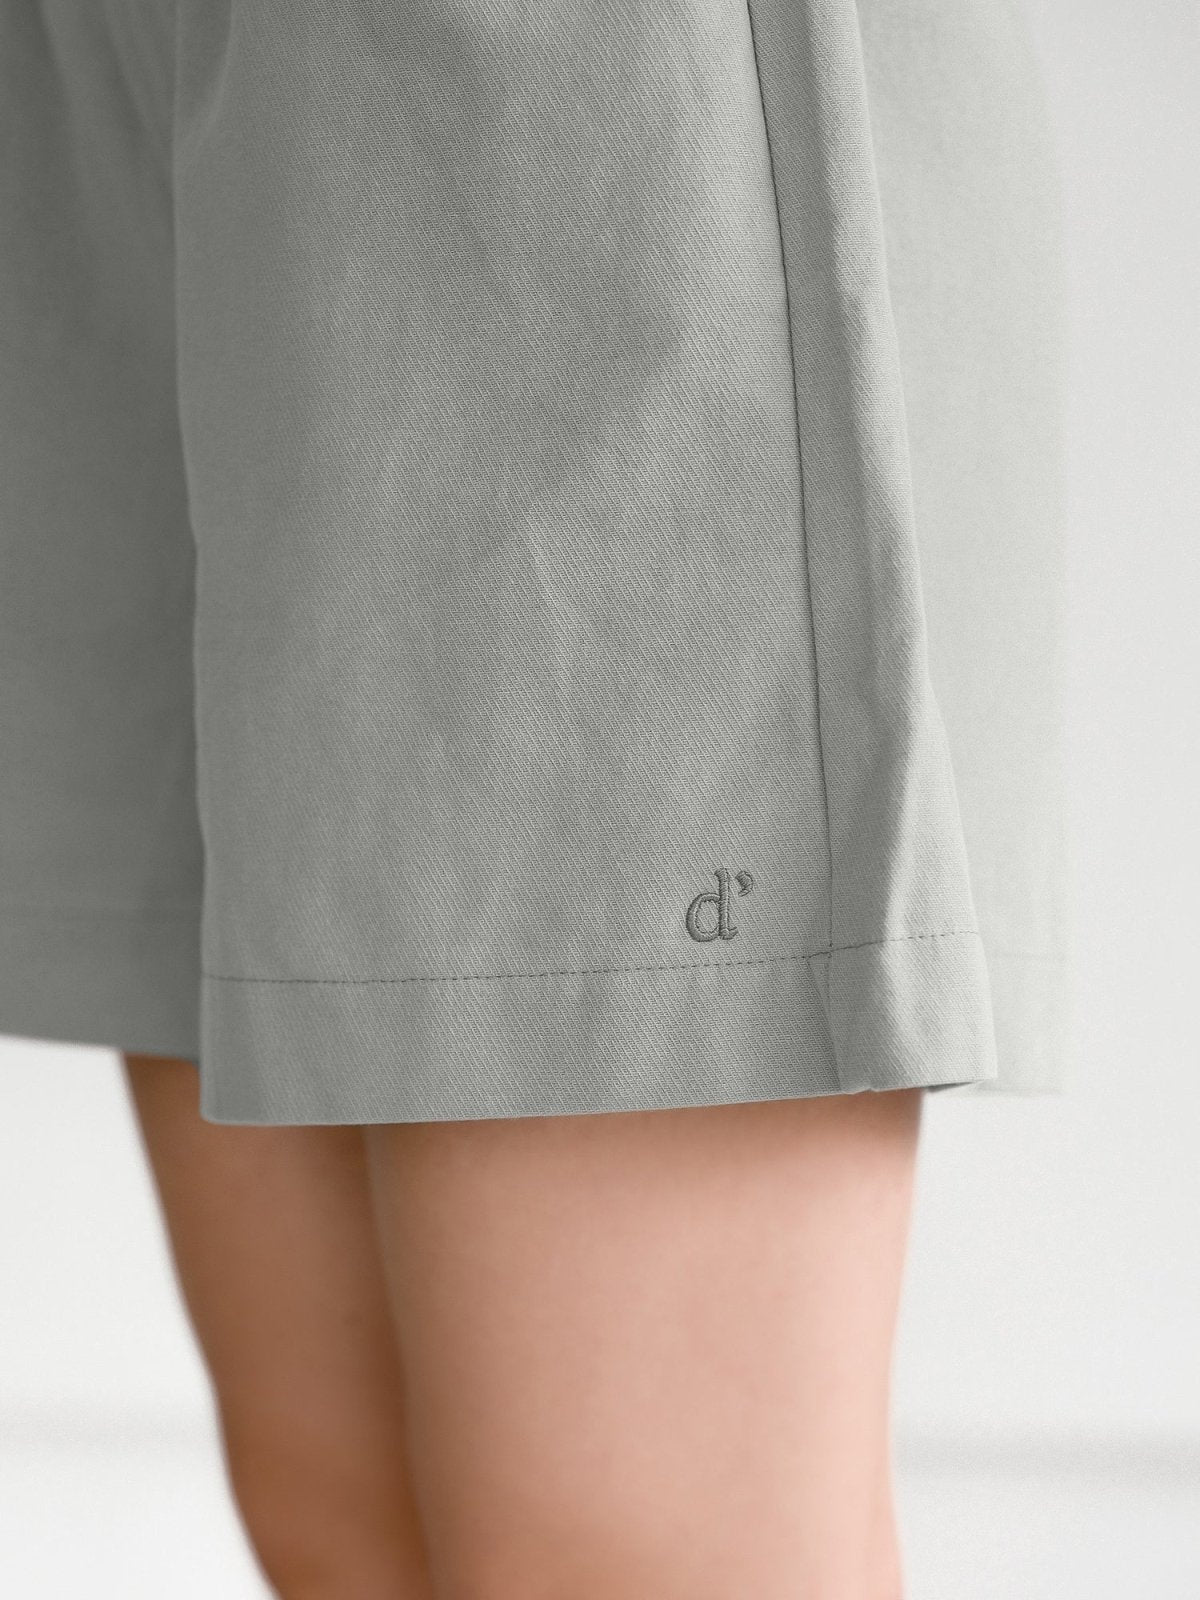 Hannah Elastic Cotton Shorts - DAG-G-220174GreyF - Stone Blue - F - D'ZAGE Designs